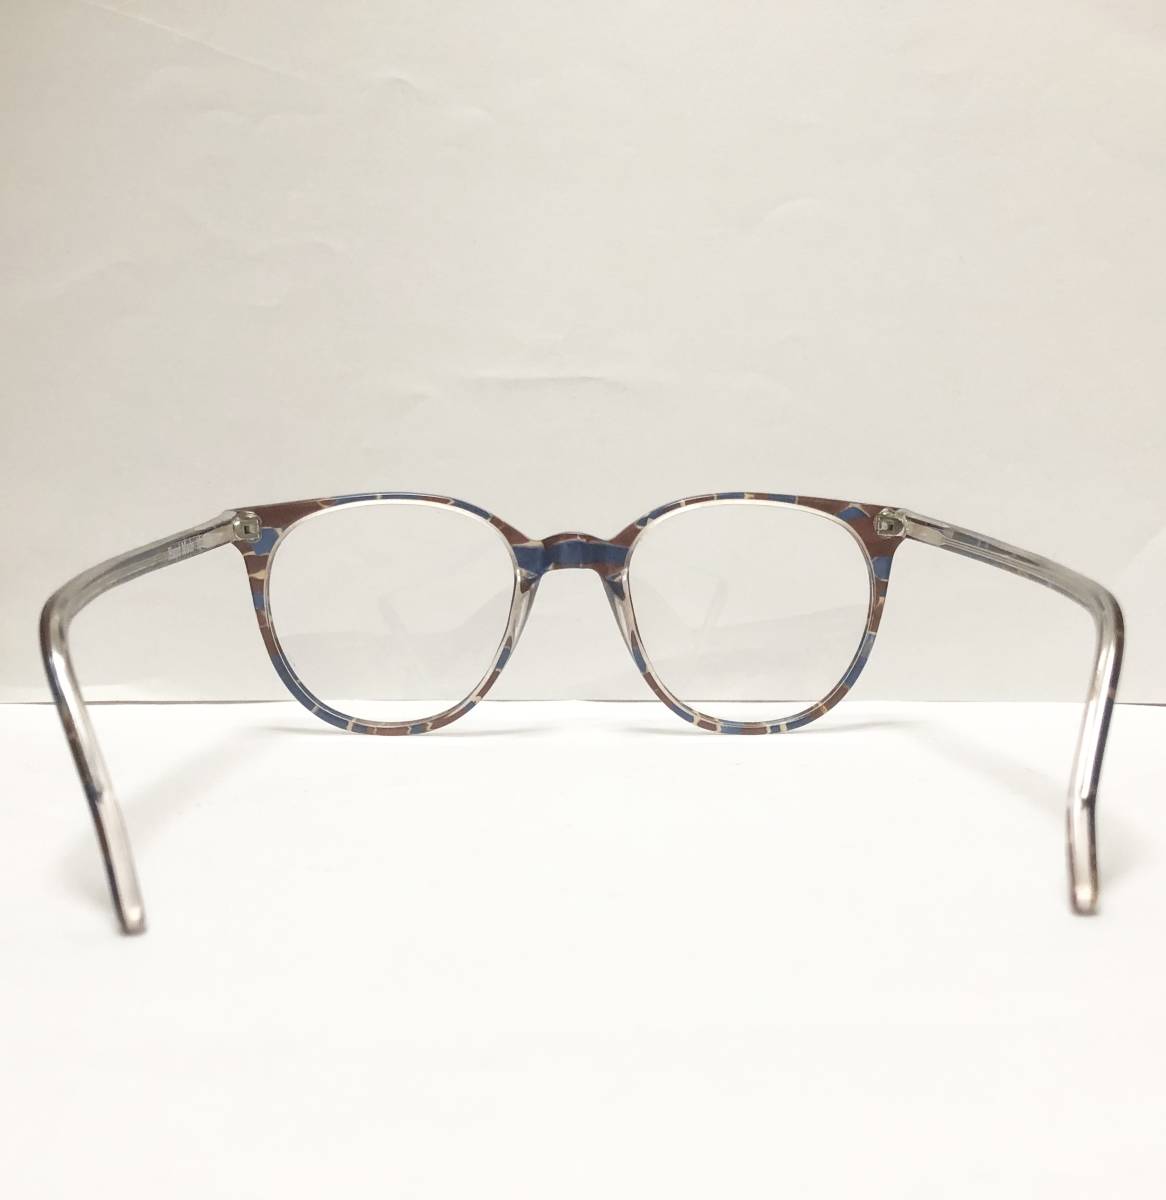 処分価格 未使用 1970年代 サファイヤ柄 英国製メガネ イギリス ヴィンテージ / ビンテージ _画像6